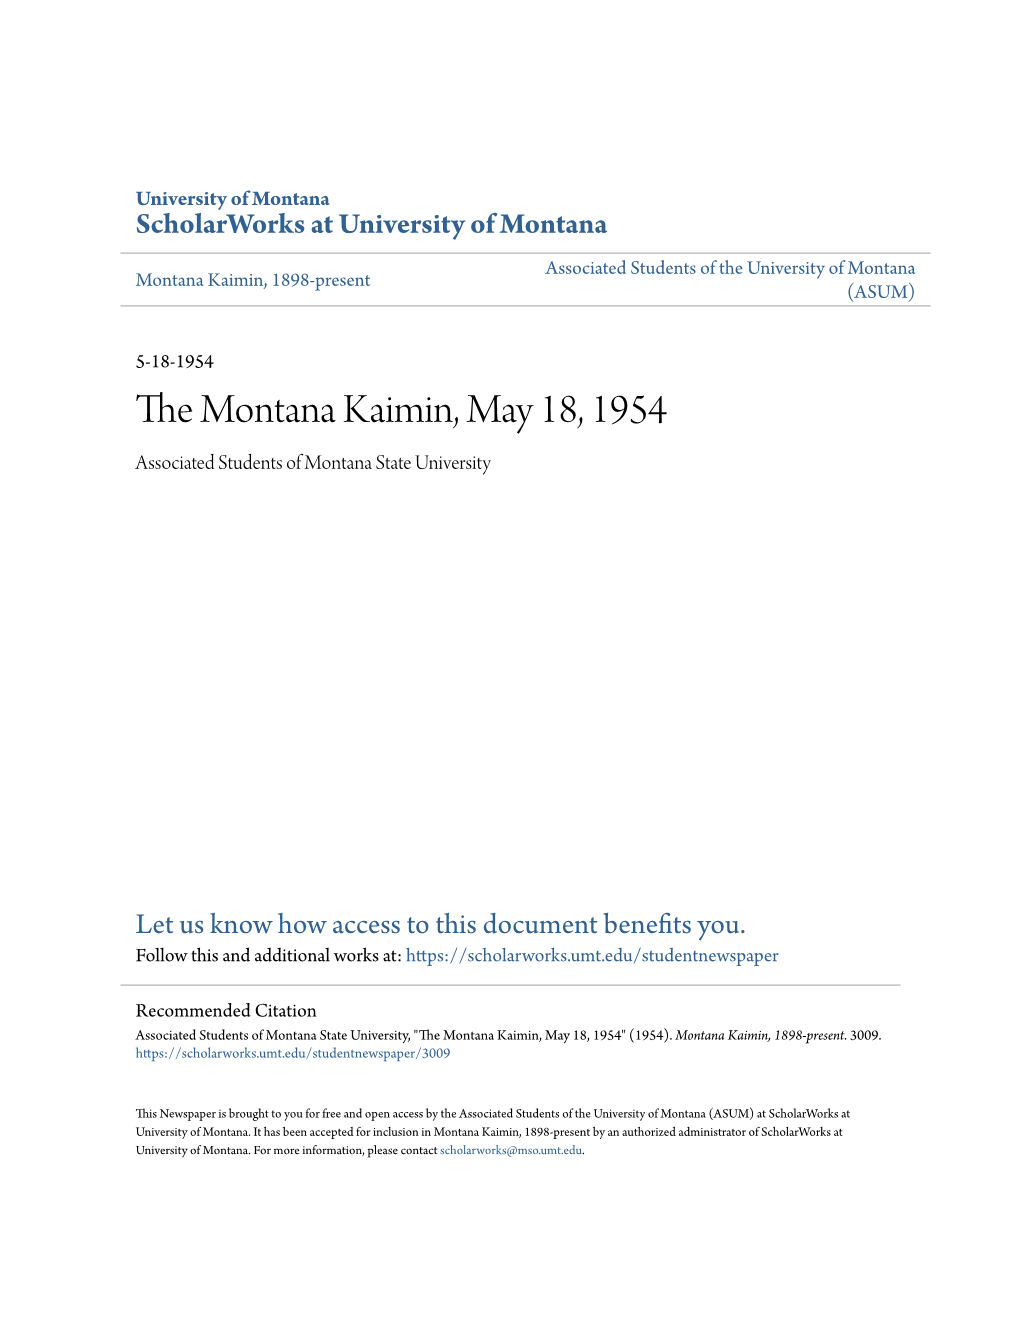 The Montana Kaimin, May 18, 1954